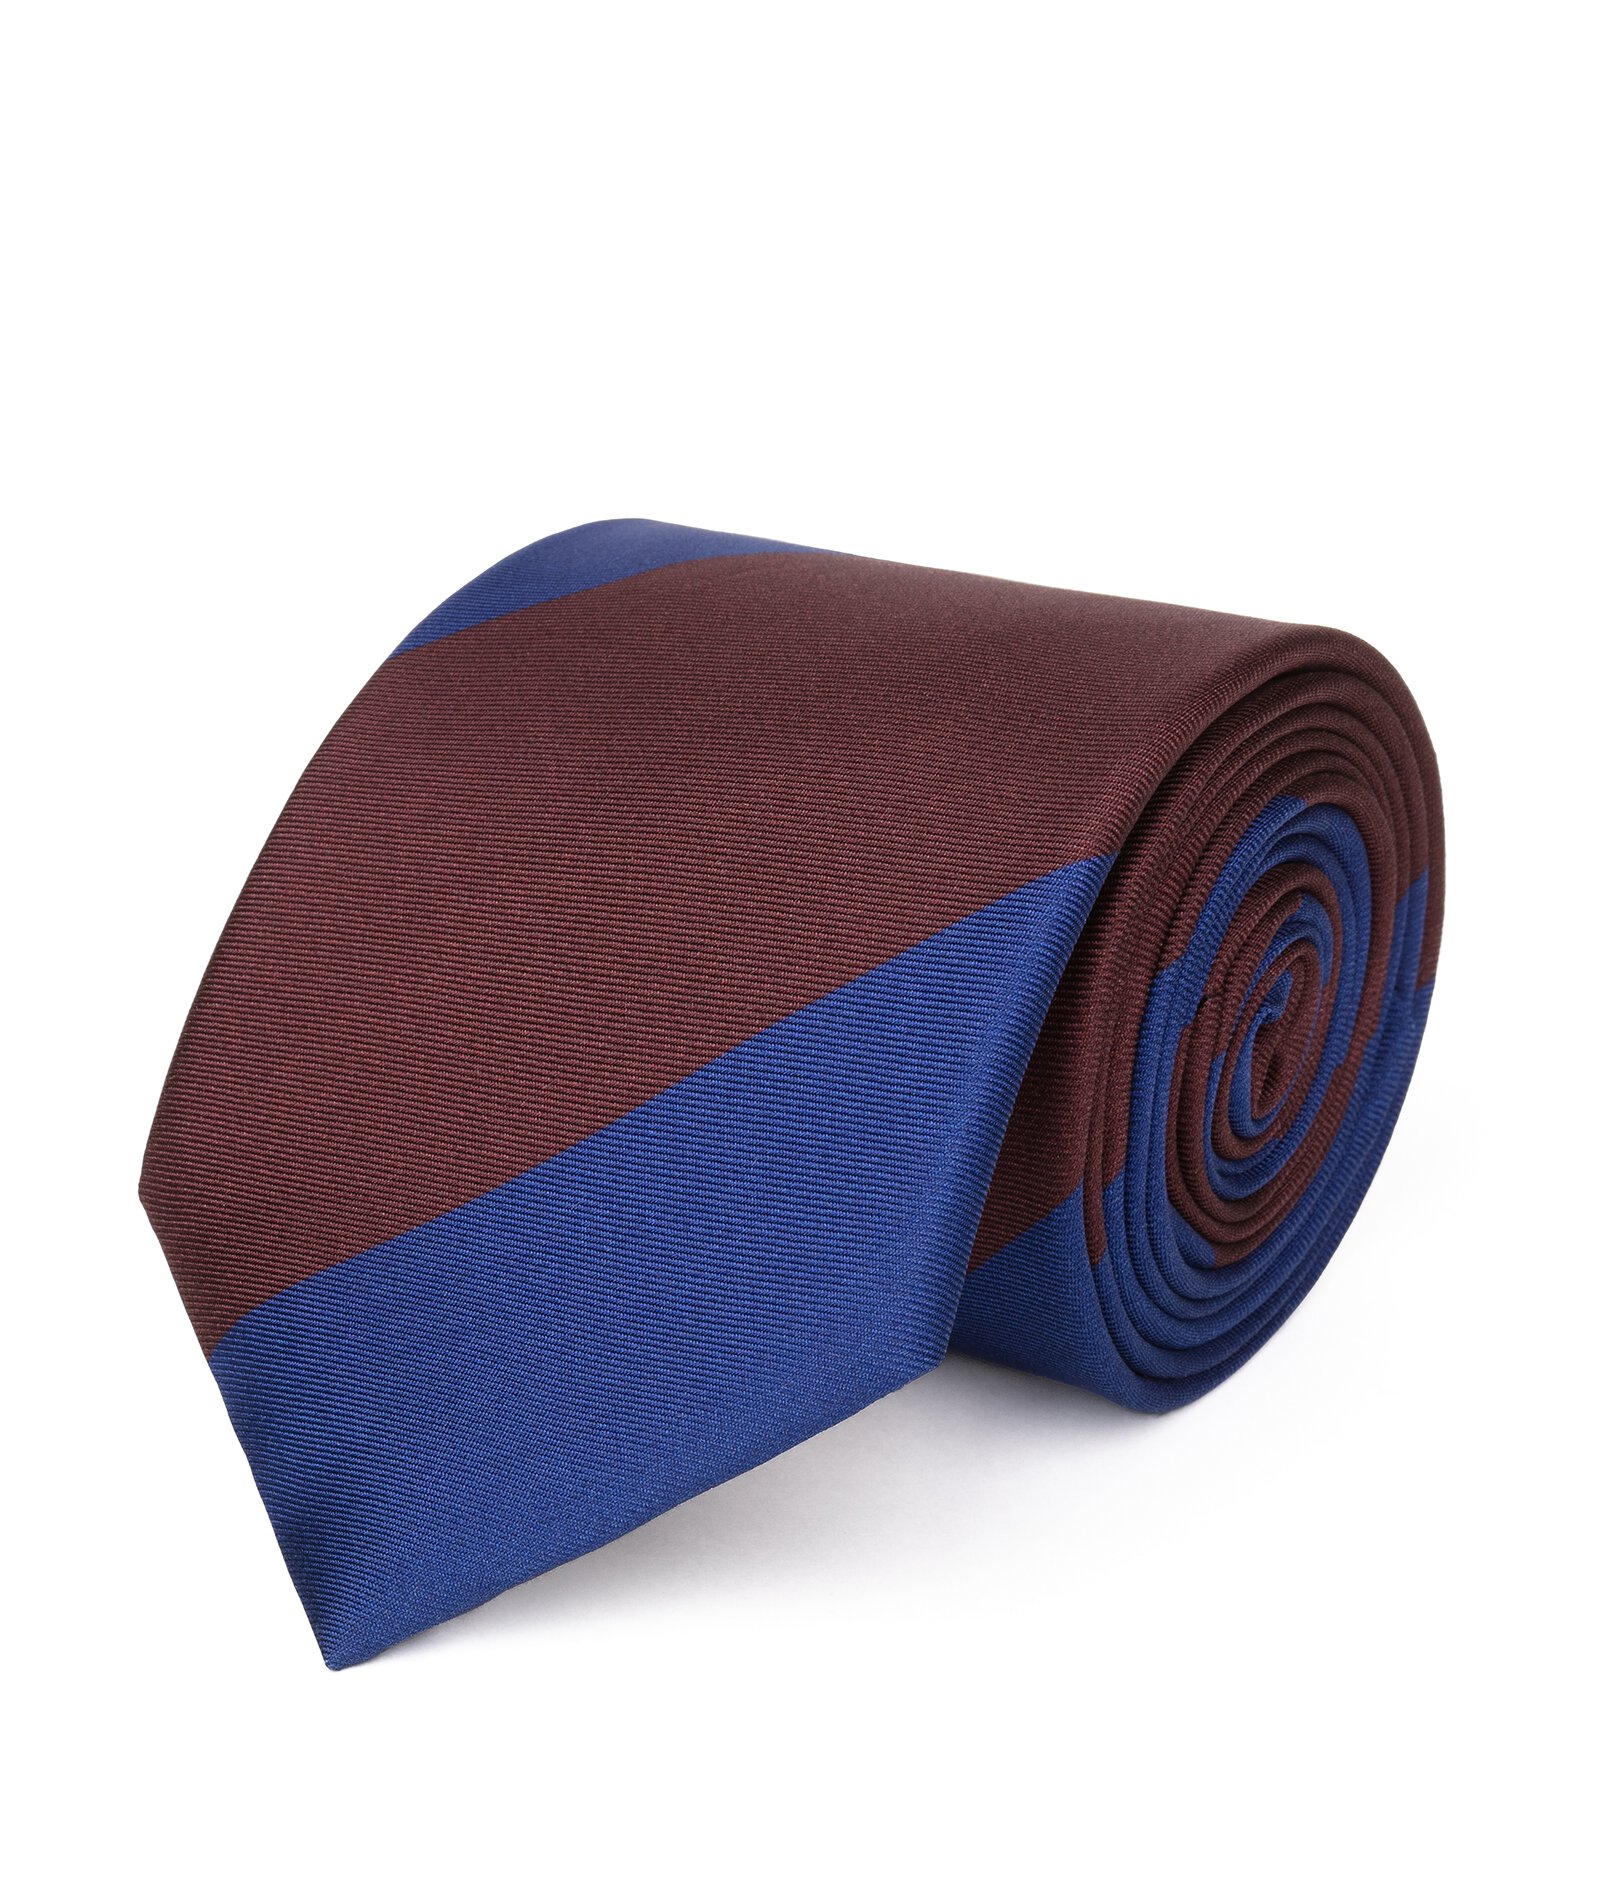 Image of Cravatta su misura, Lanieri, Blu e Bordeaux Regimental in twill di Seta, Quattro Stagioni | Lanieri